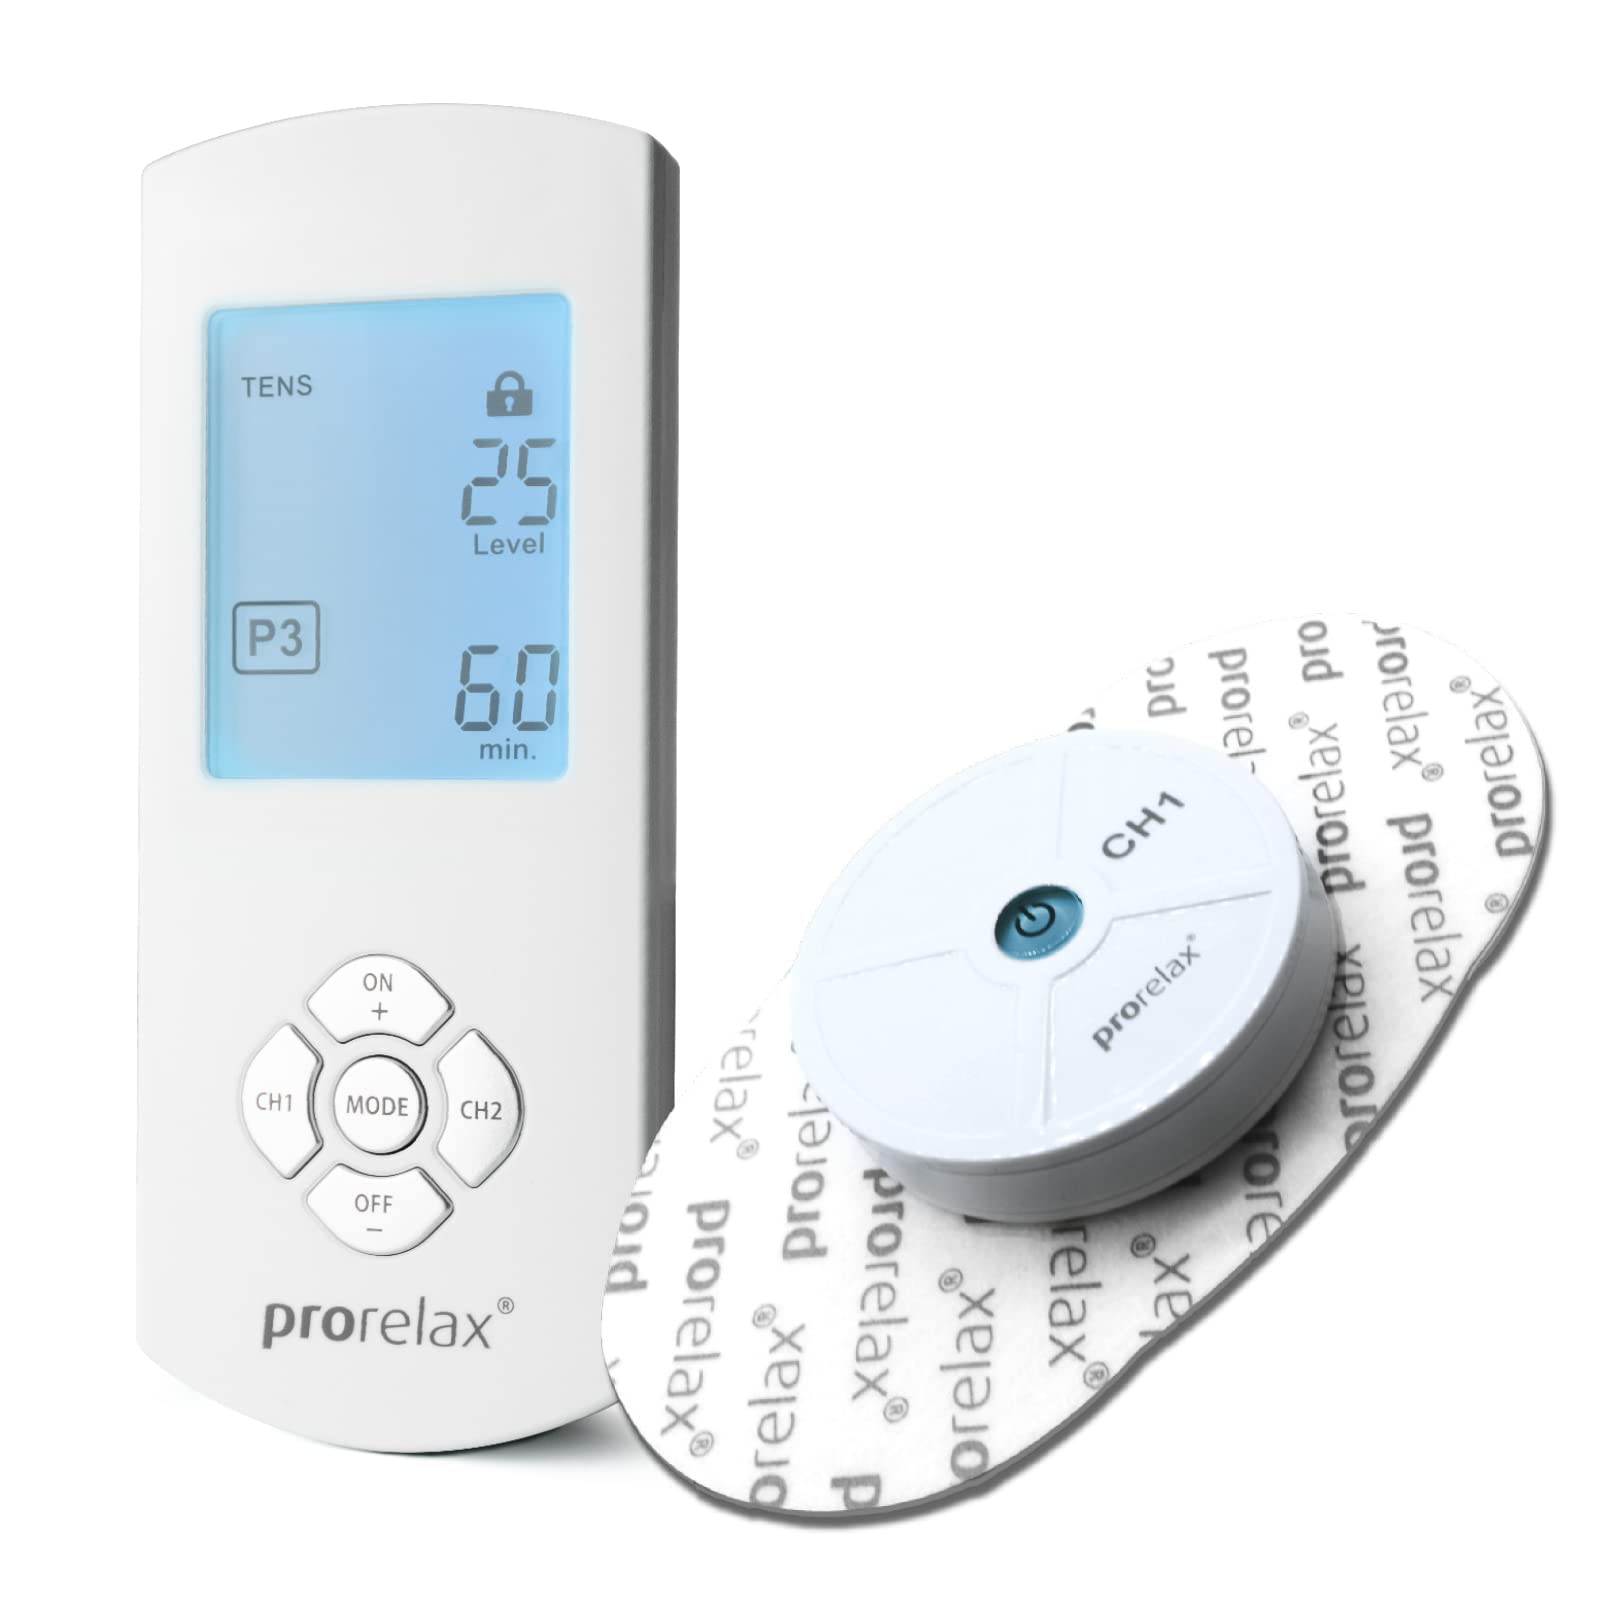 prorelax TENS/EMS Duo Comfort Wireless | Kabelloses Elektrostimulationsgerät | 2 Therapien mit einem Gerät | Gegen chronische Schmerzen und zum Muskelaufbau | Extra großes, beleuchtetes Display